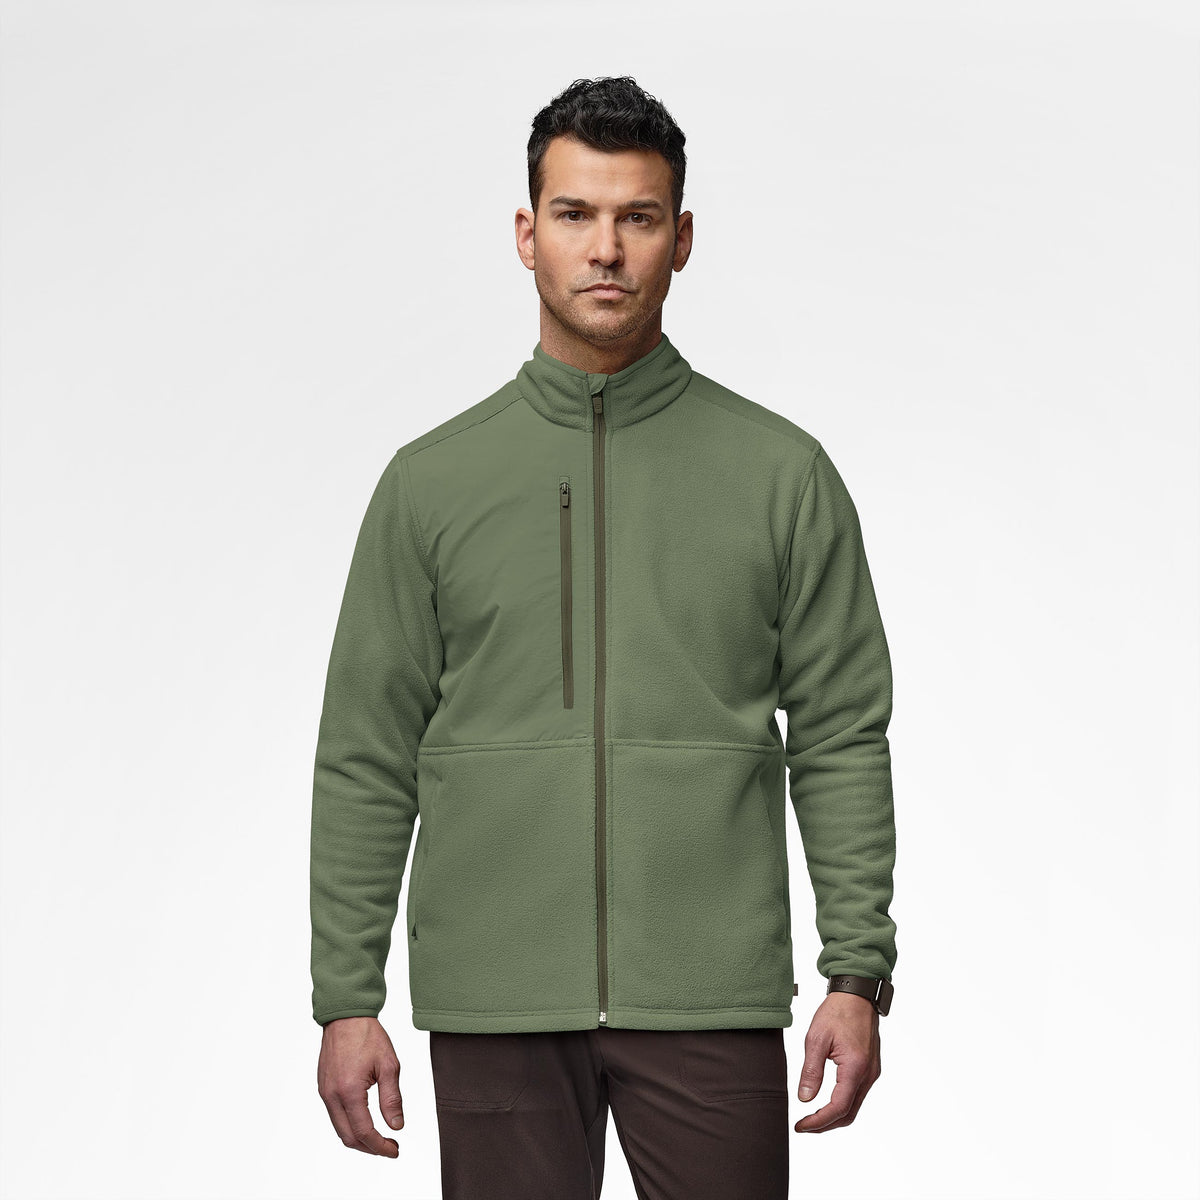 Slate Men's Micro Fleece Zip Jacket Olive